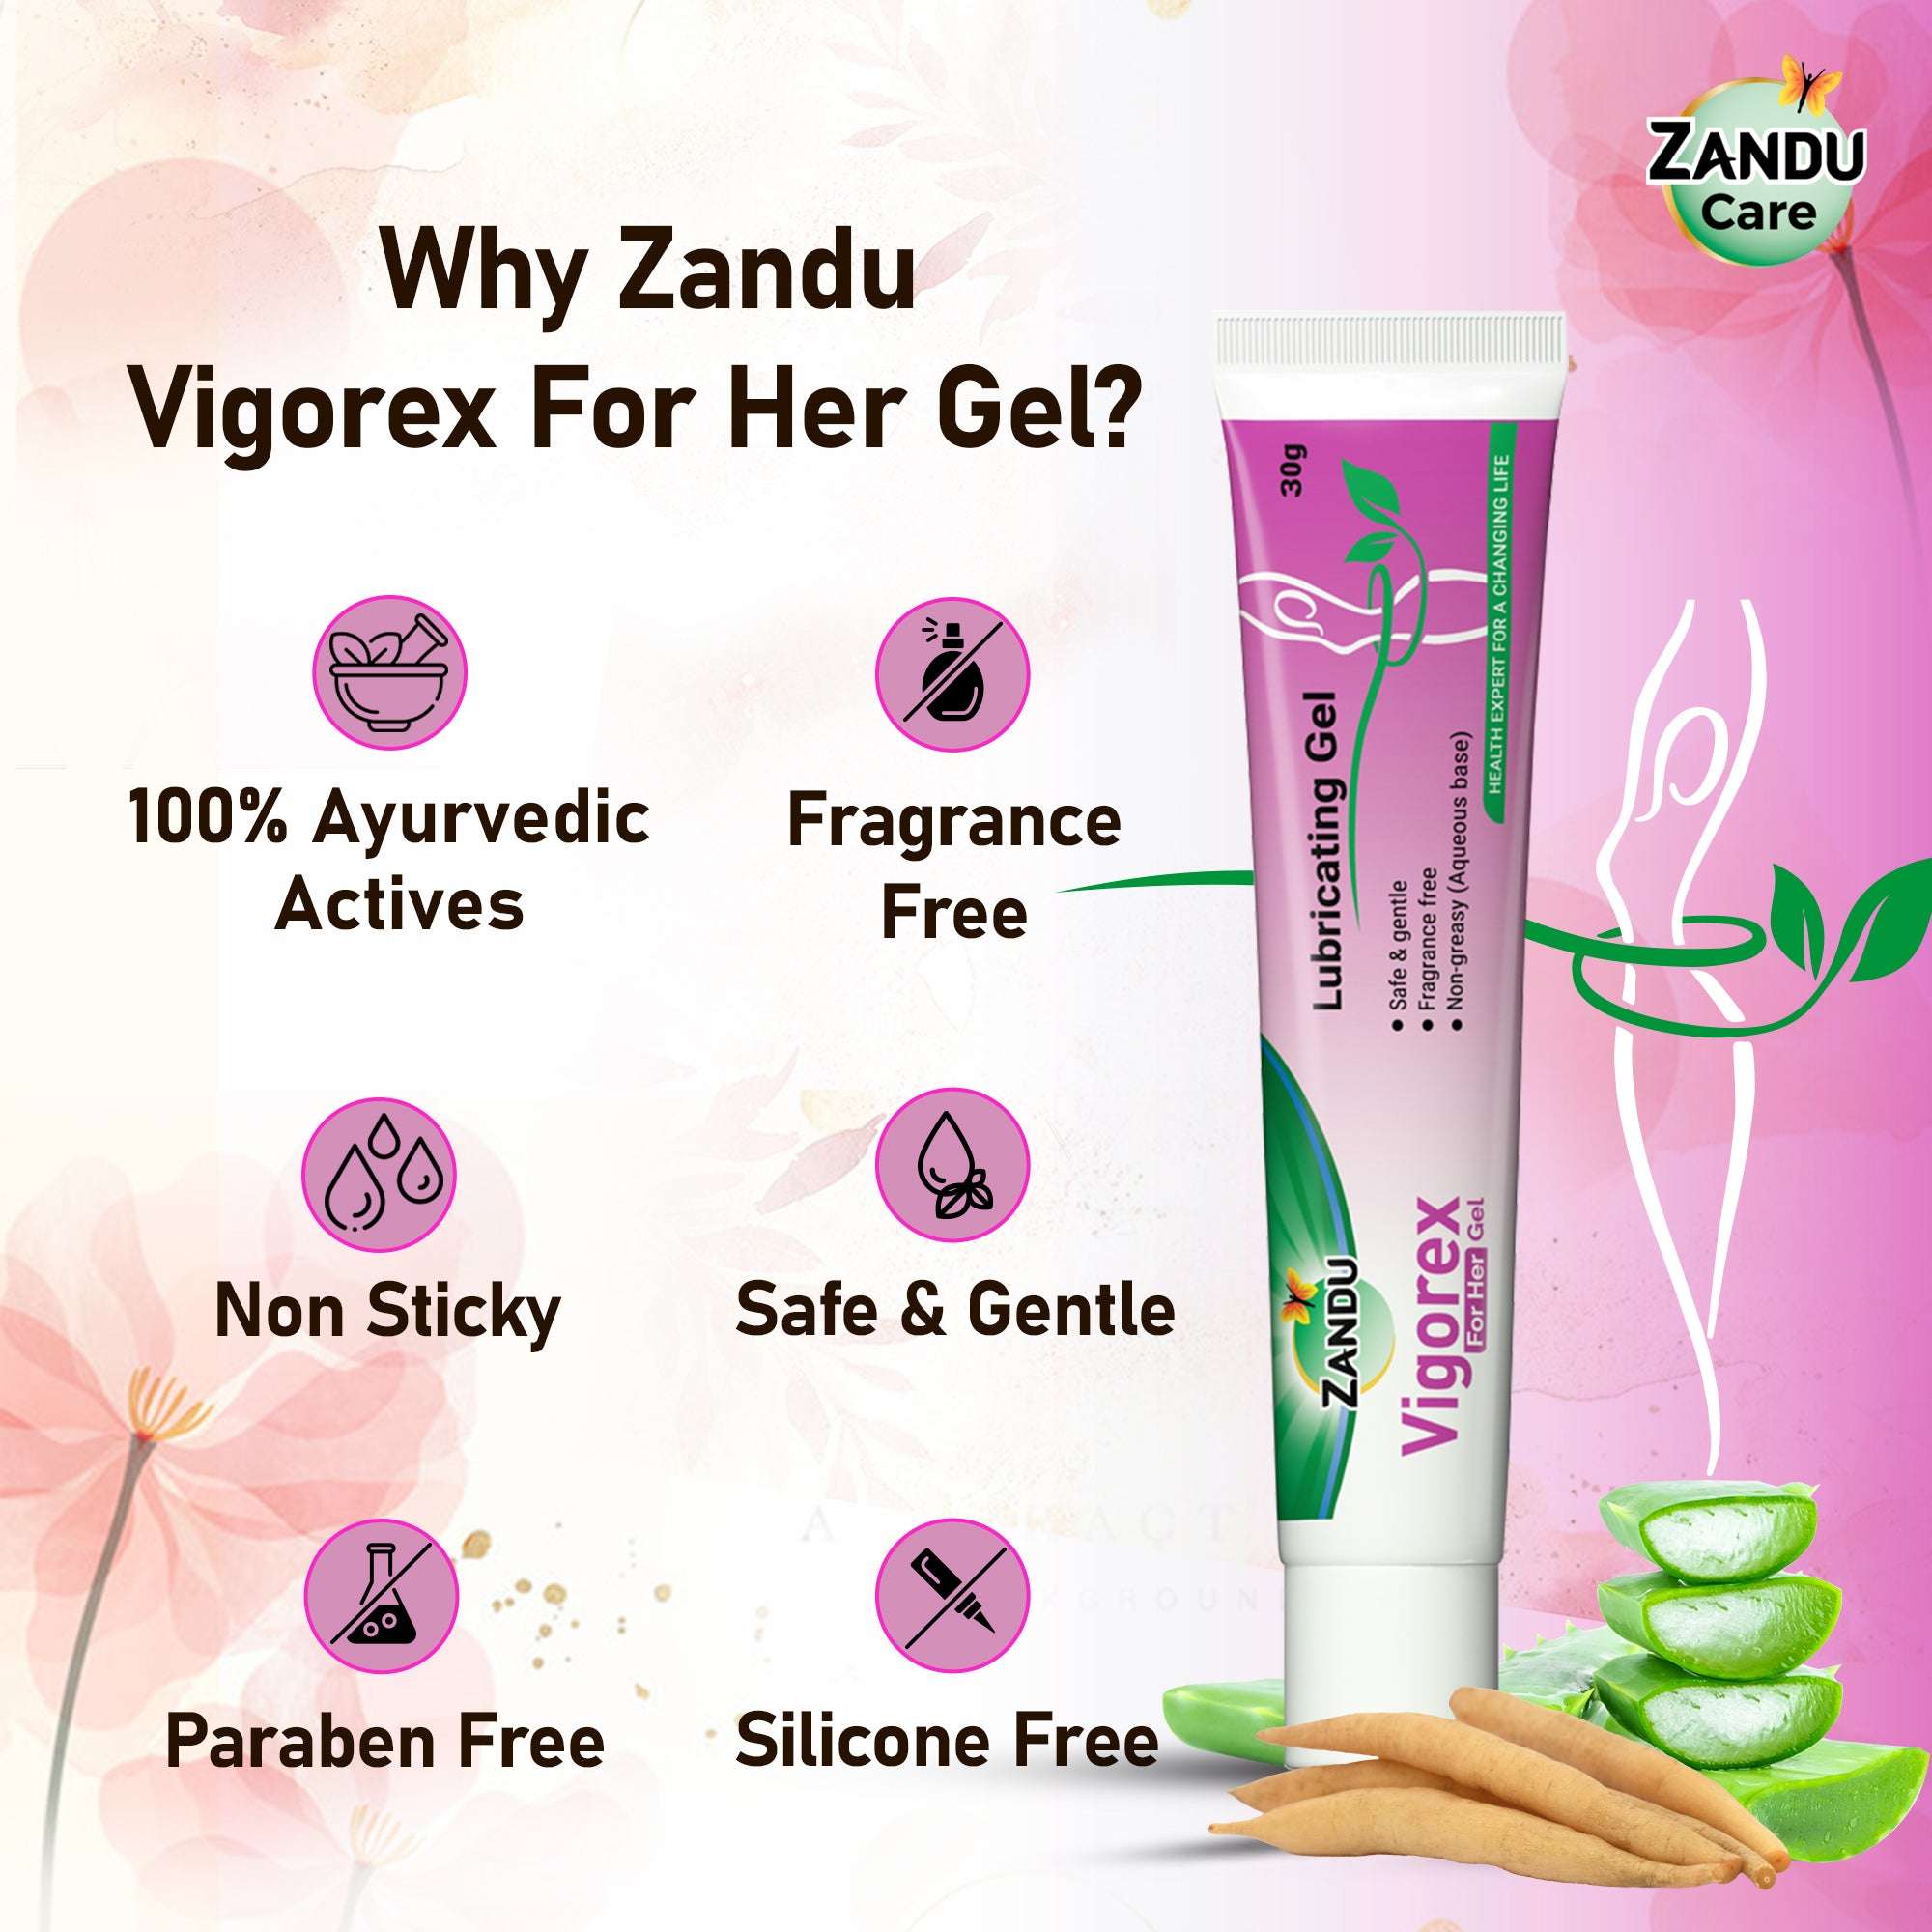 Vigorex for her gel benefits